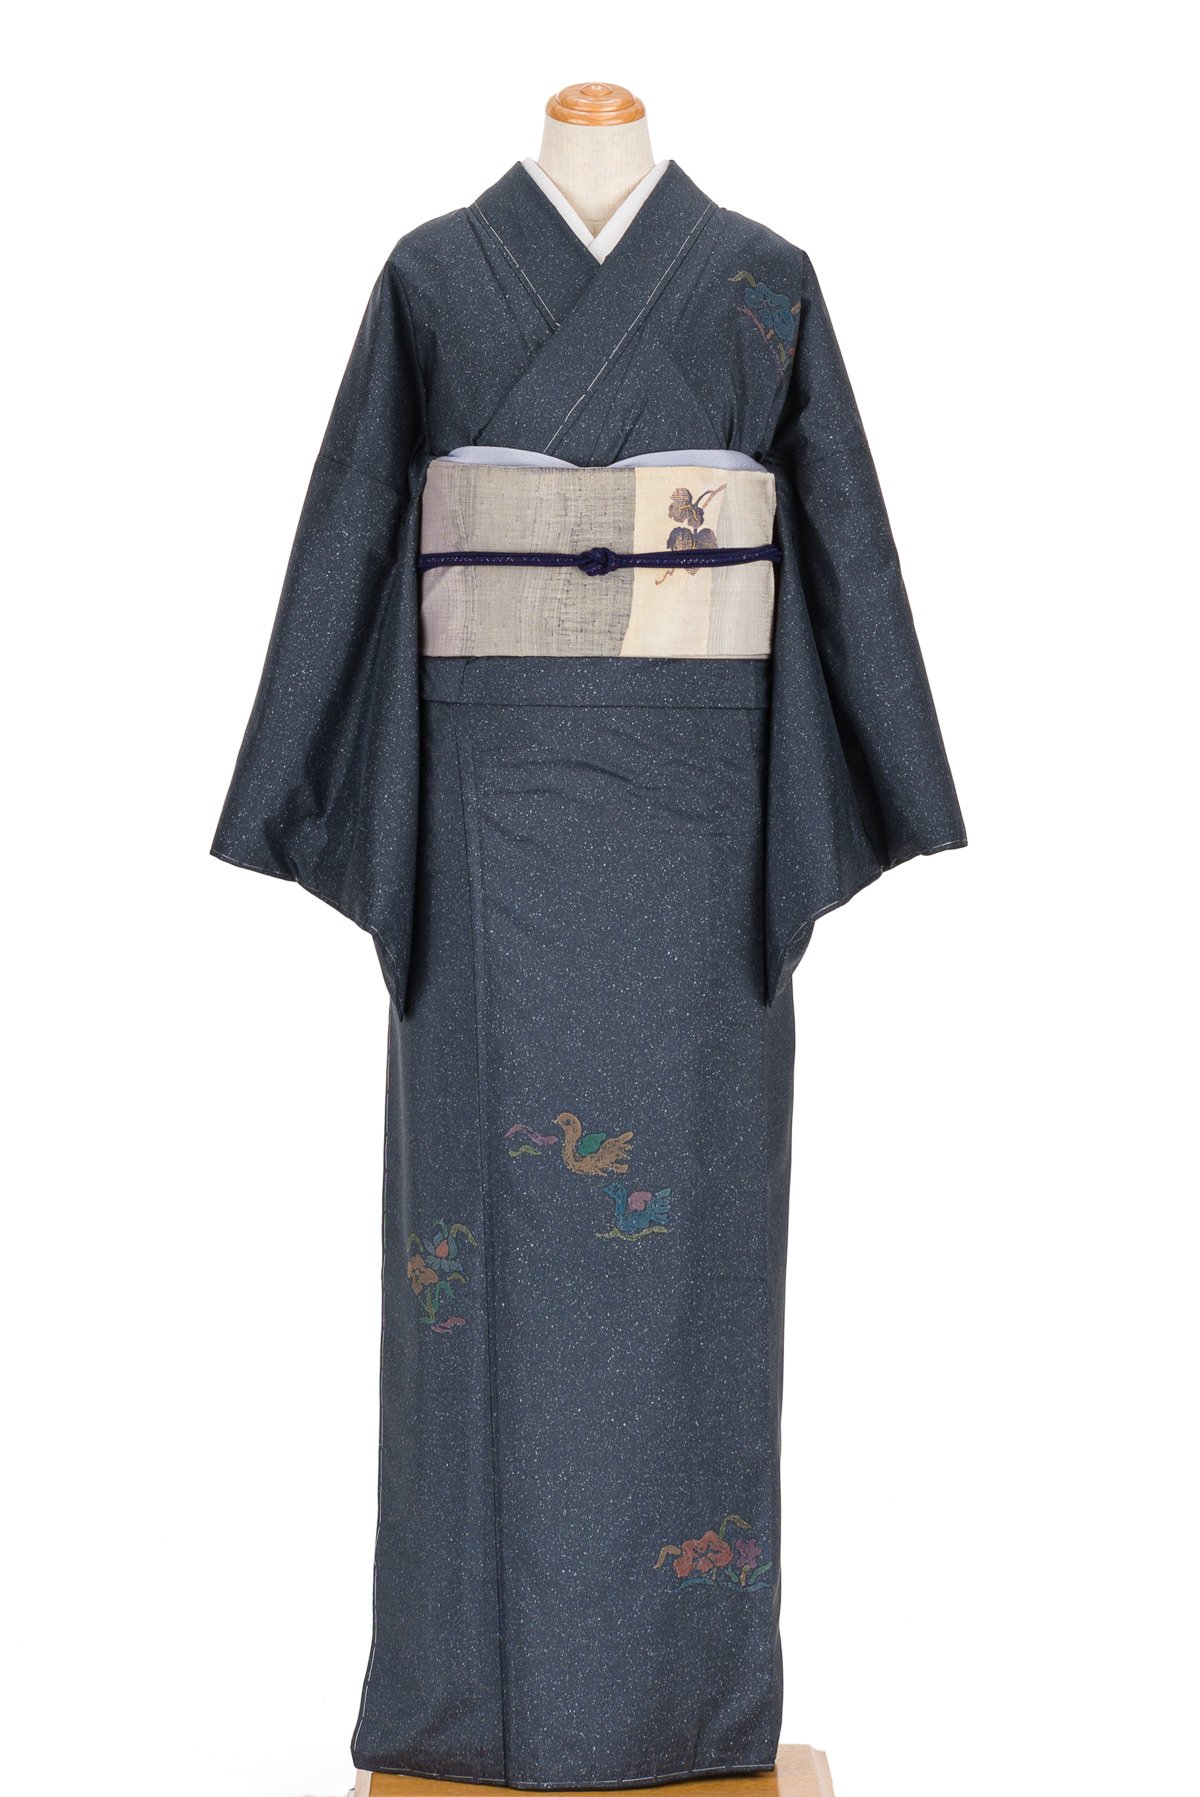 雪輪に風景が織られた大島紬の付け下げ小紋 着物 - 着物